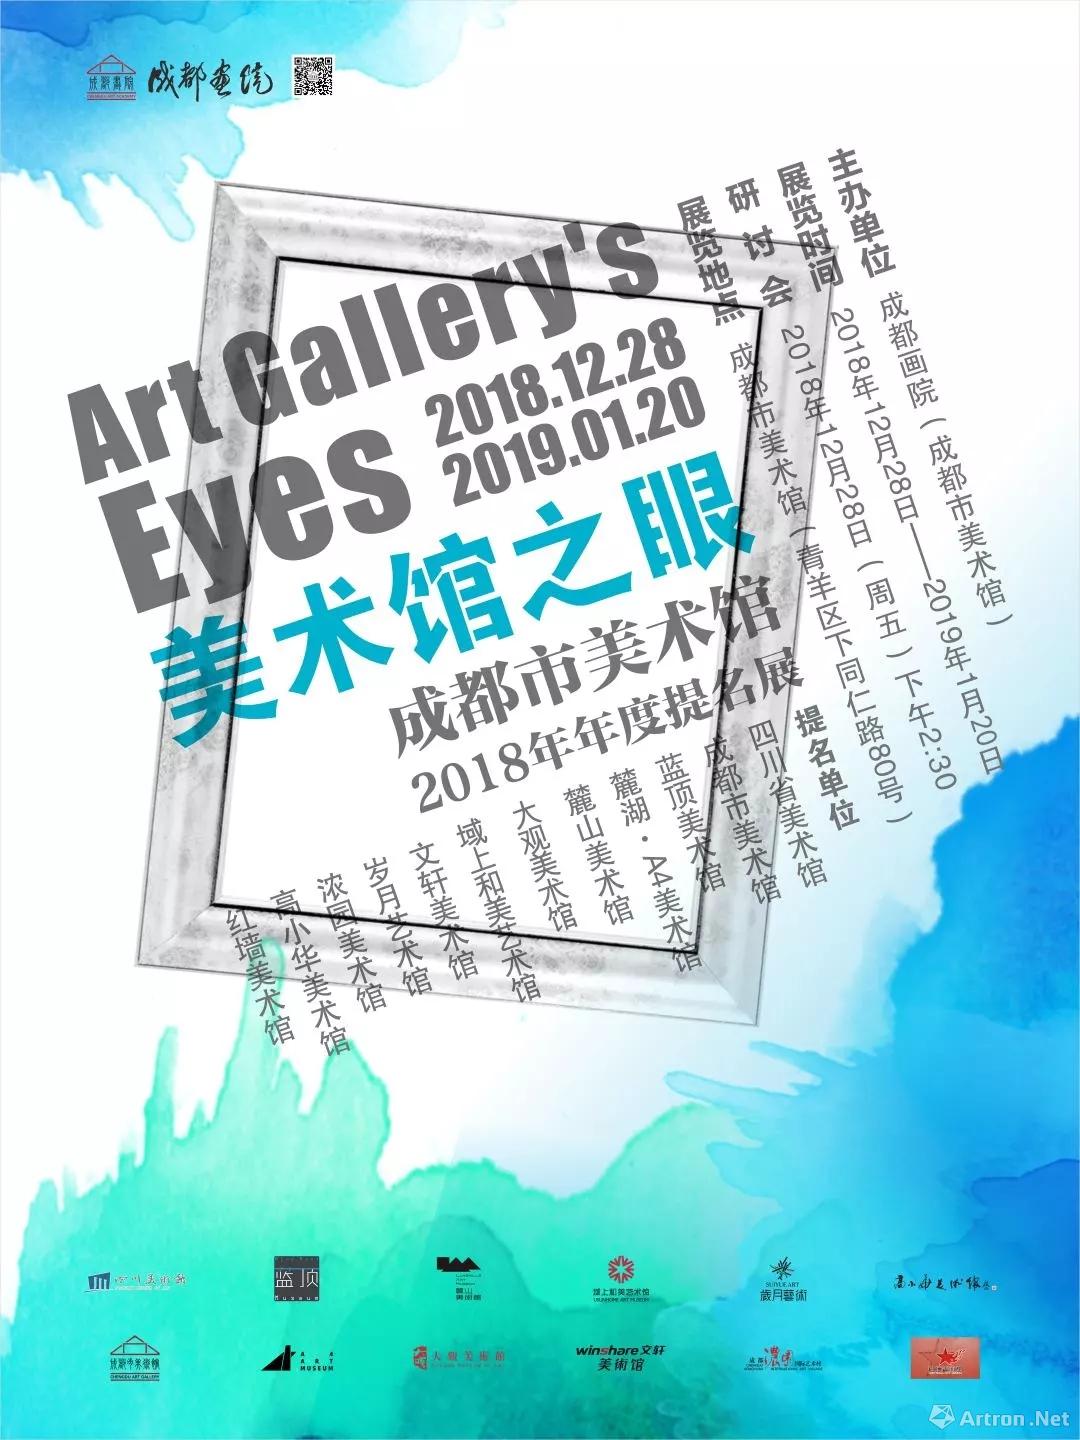 “美术馆之眼”成都市美术馆2018年年度提名展